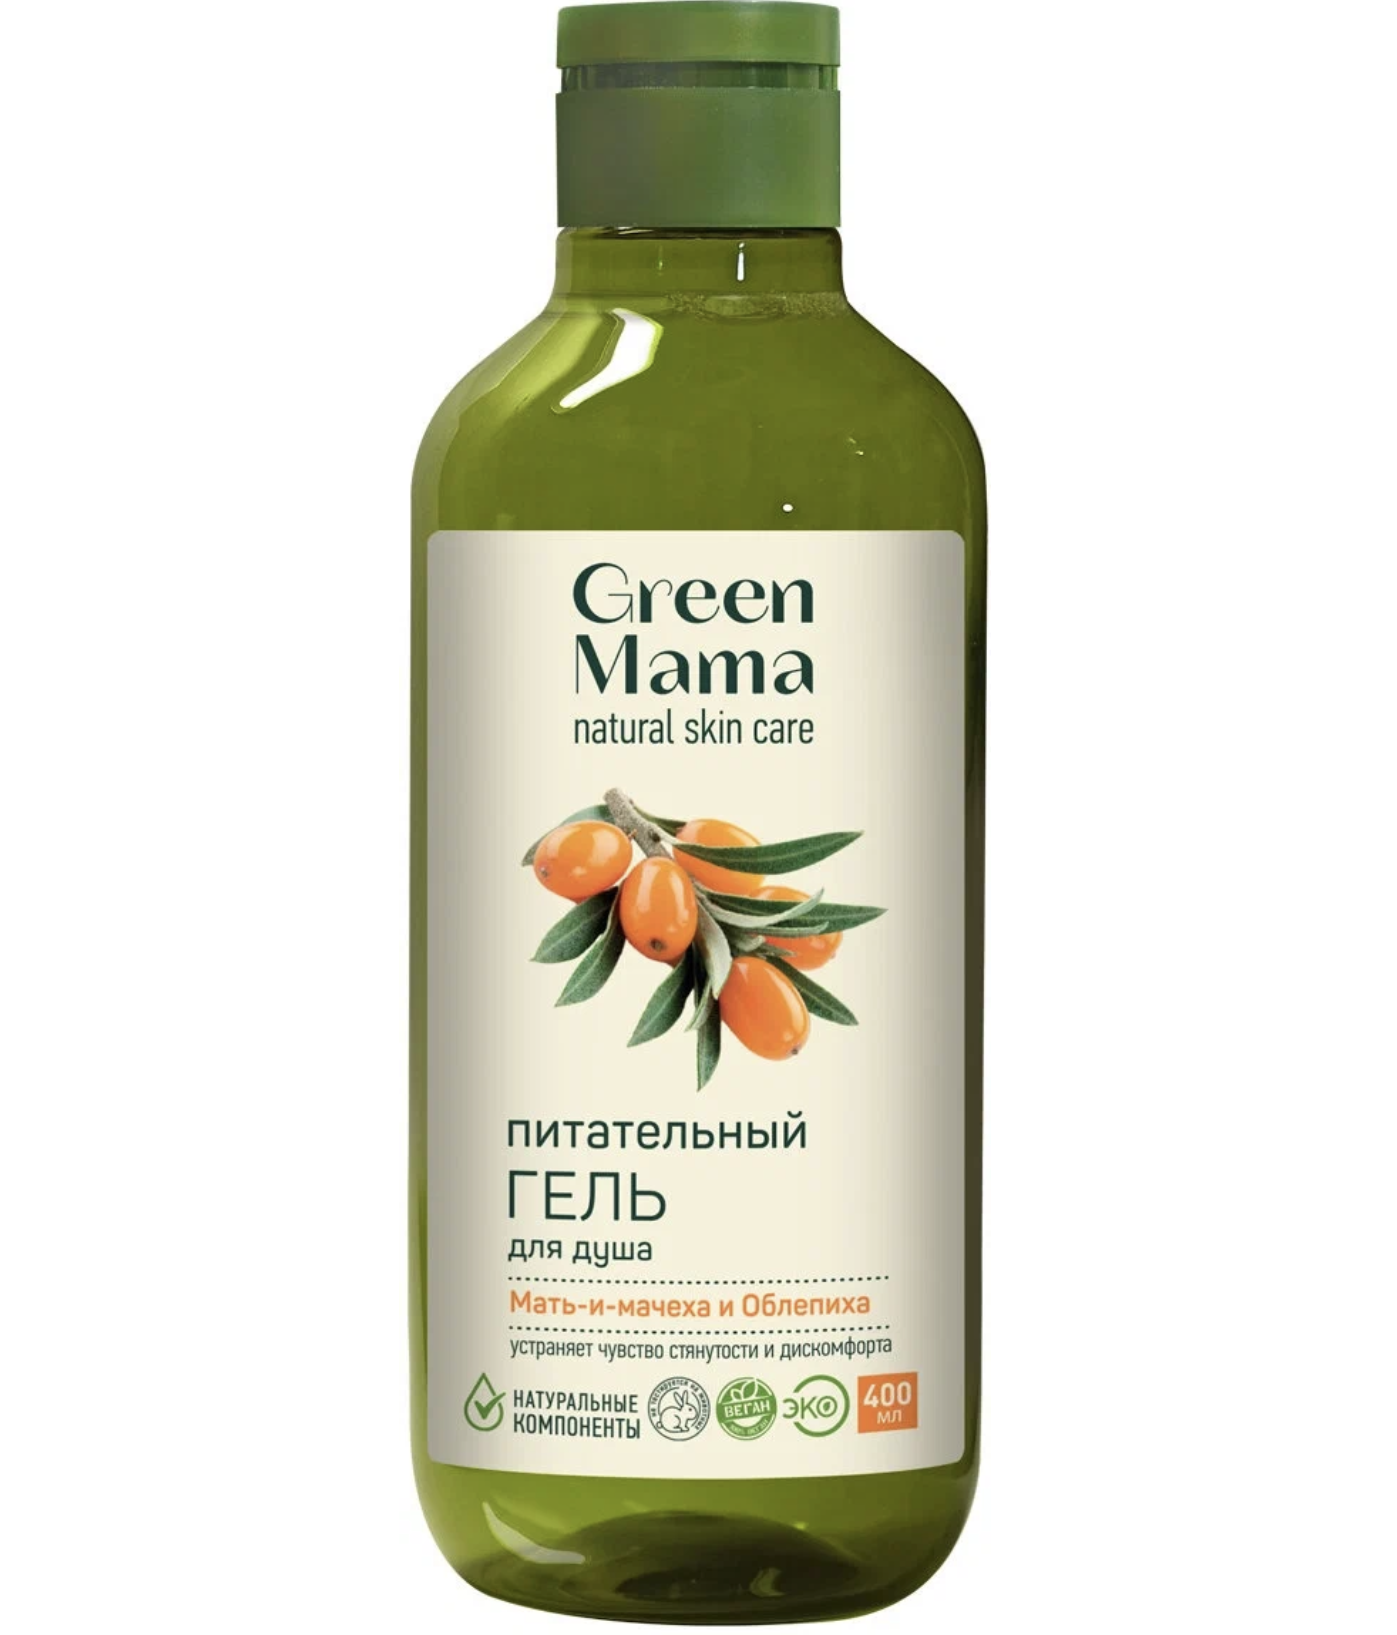    / Green Mama Natural Skin Care -     --   400 